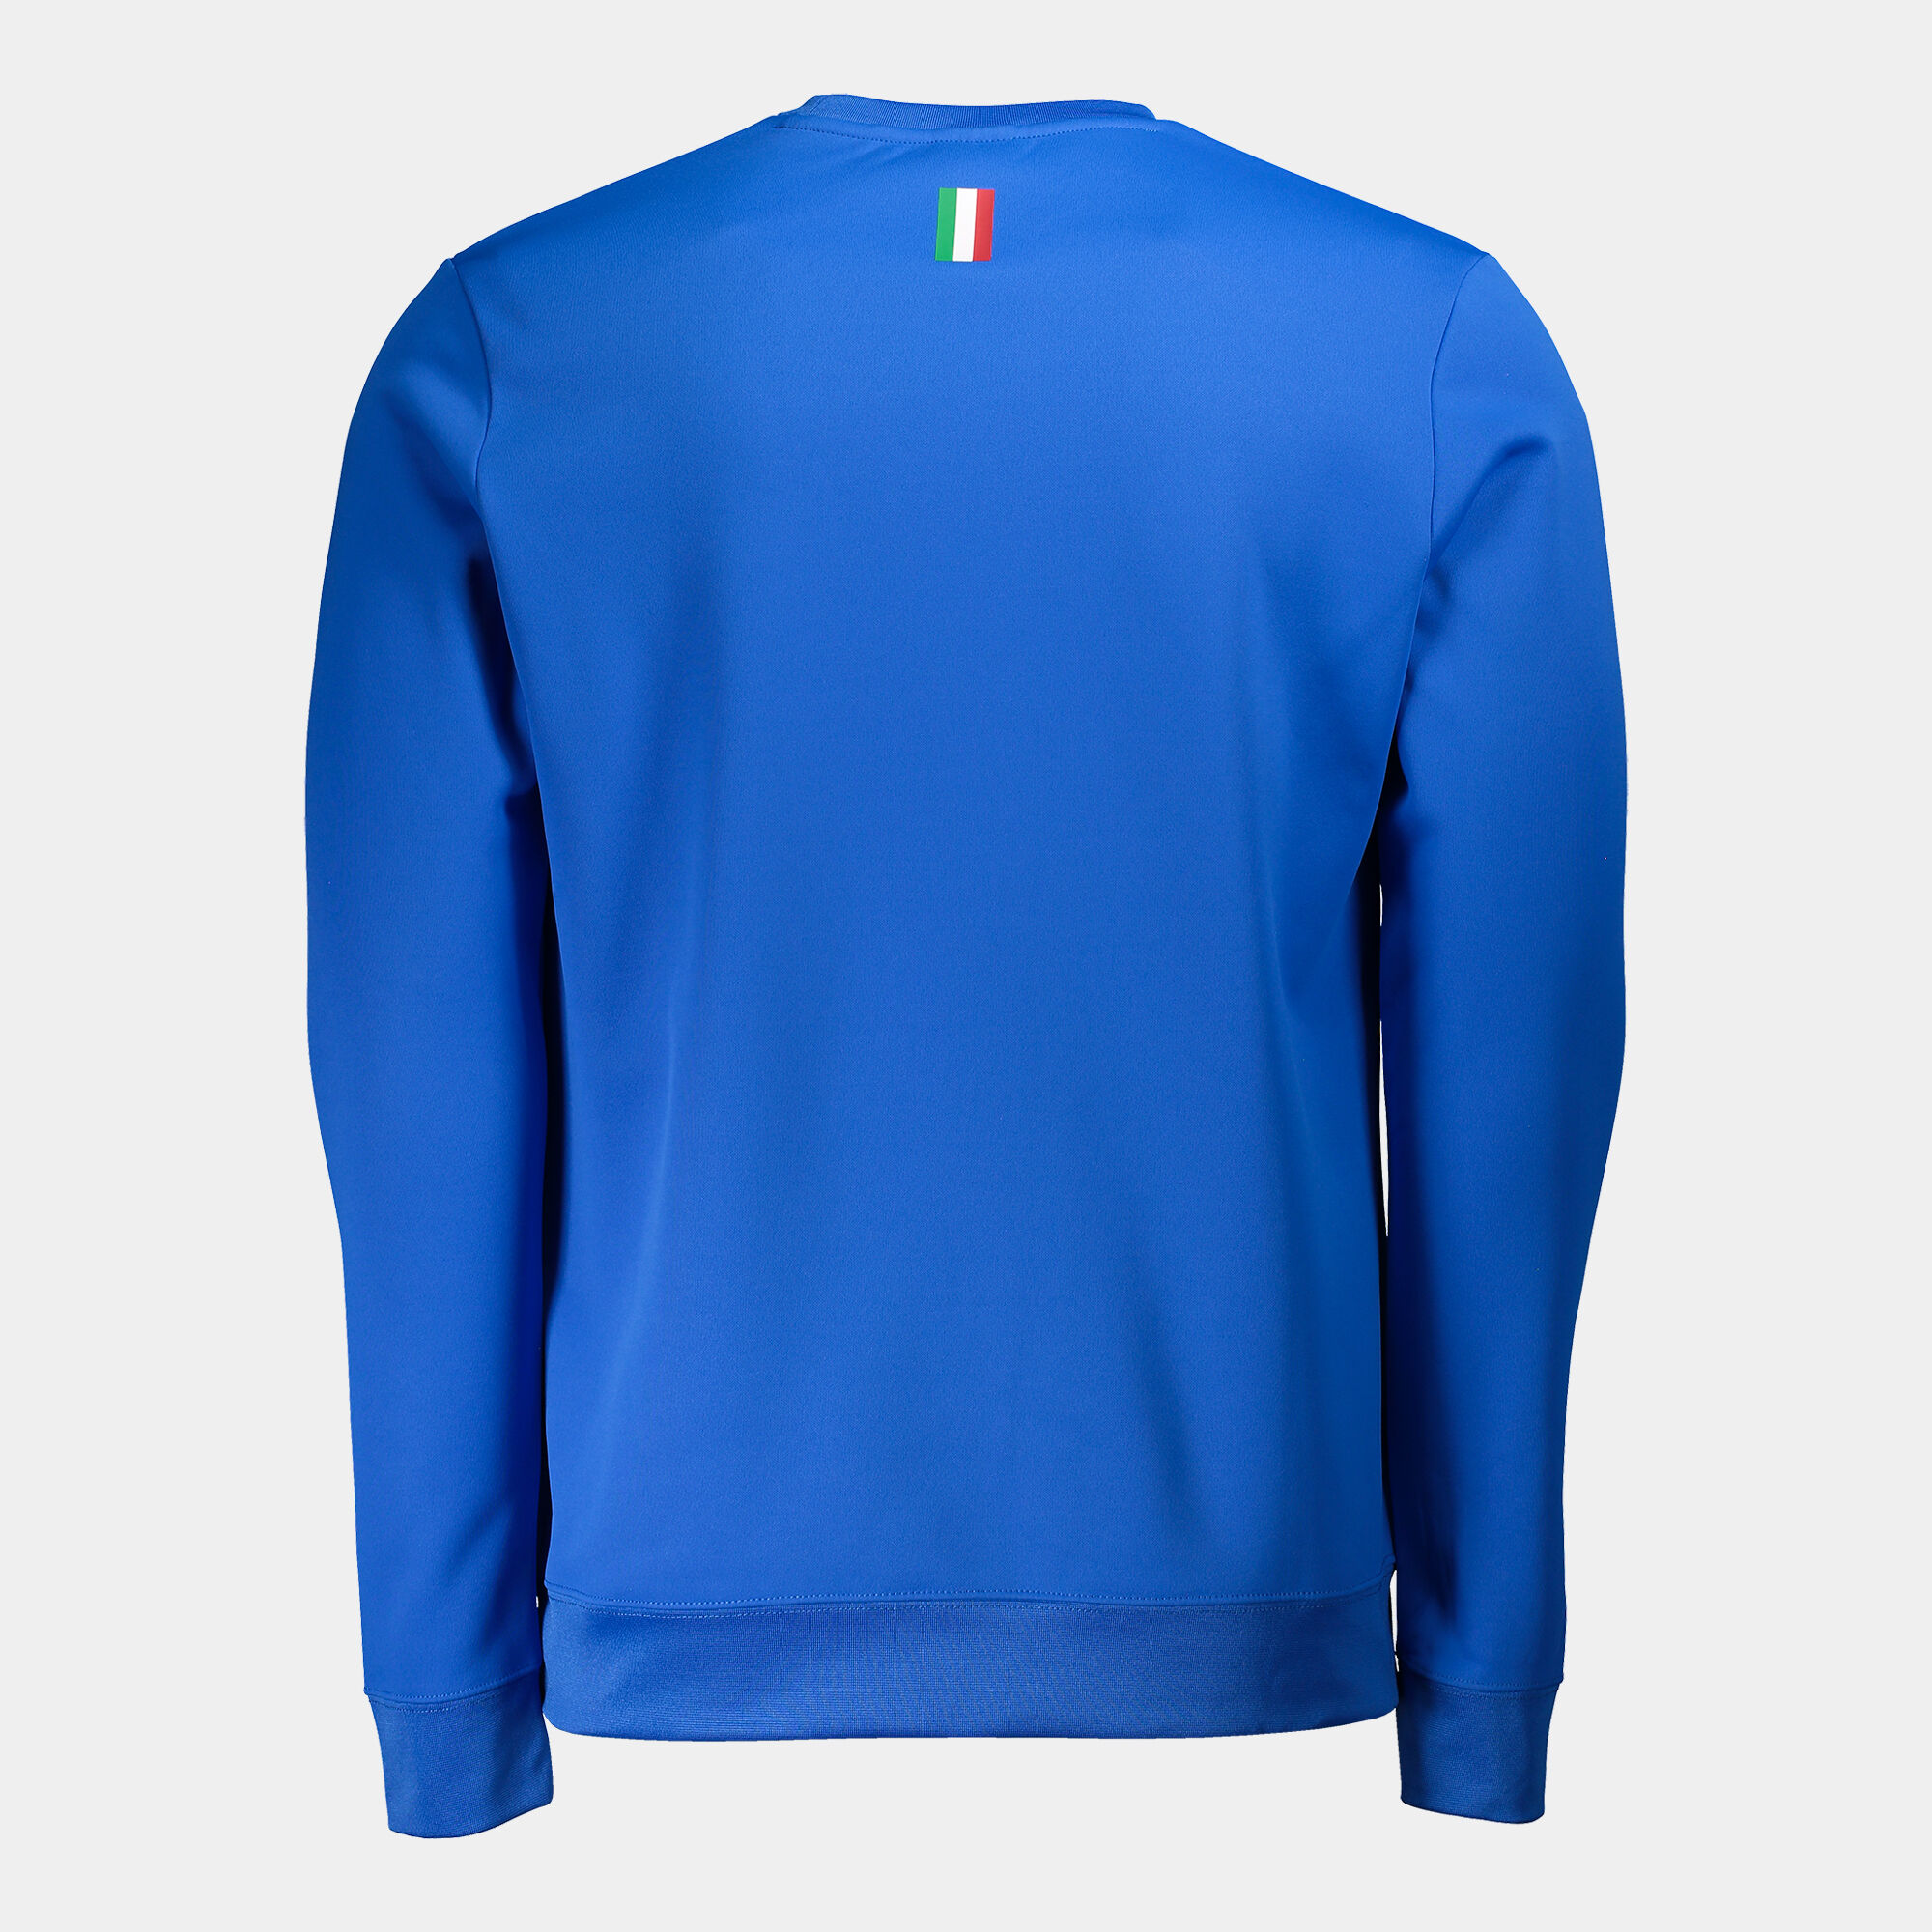 Sweat-shirt Fédération Italienne De Tennis Et De Padel